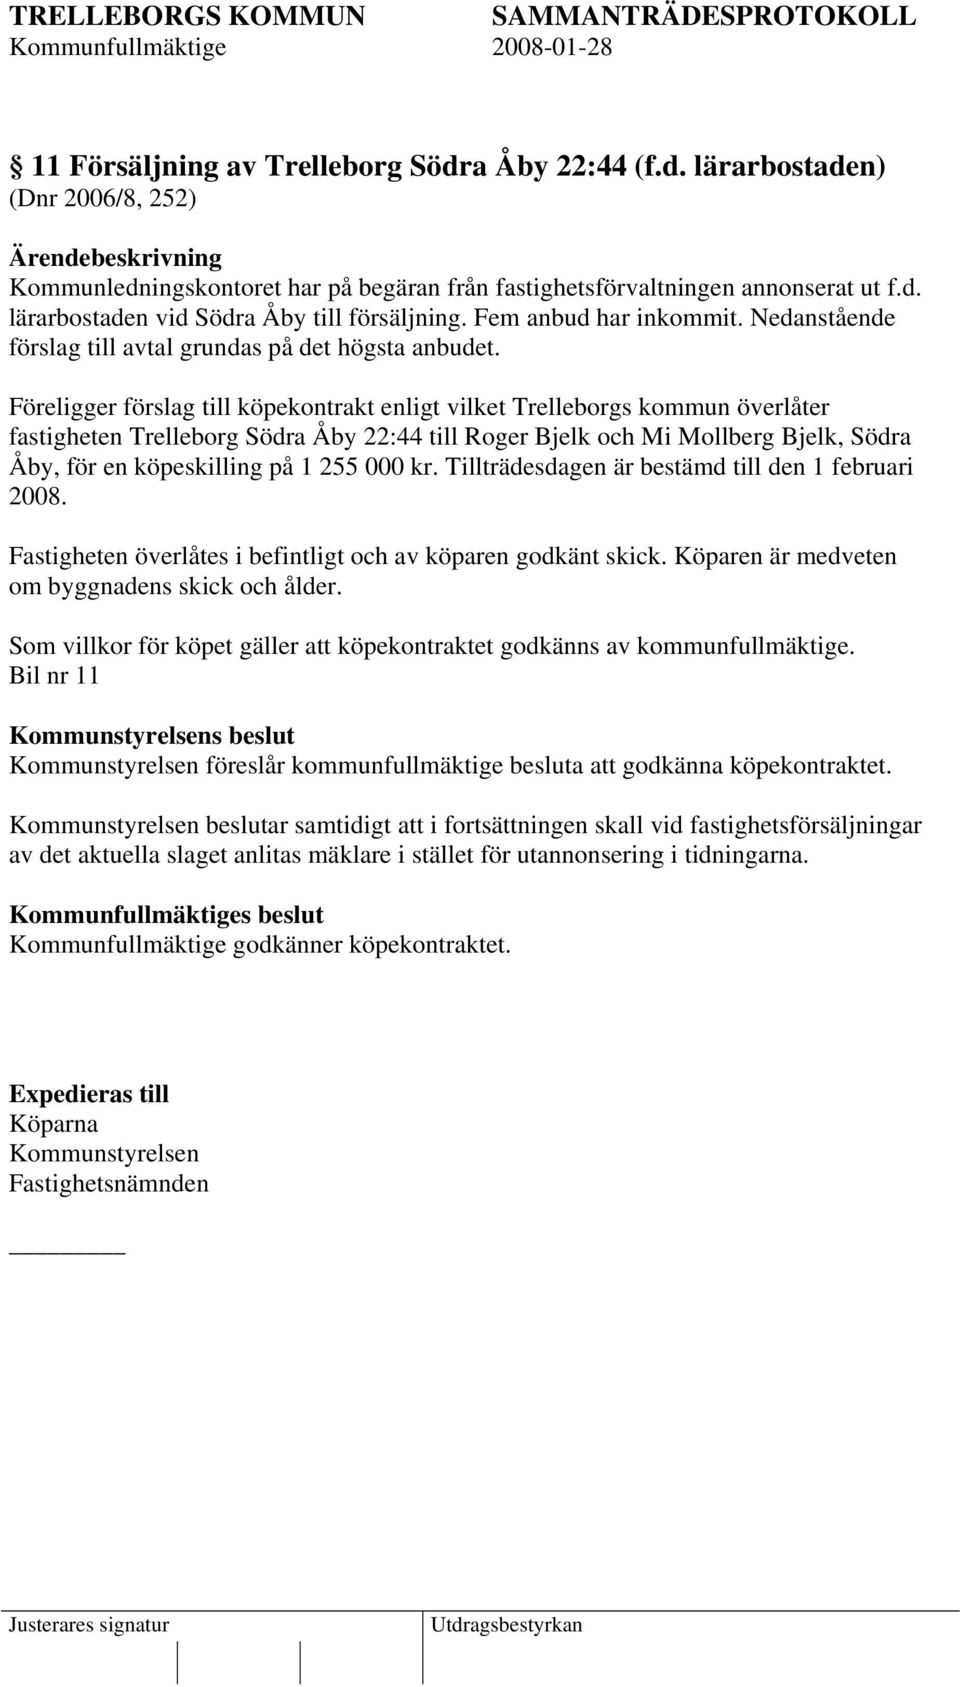 Föreligger förslag till köpekontrakt enligt vilket Trelleborgs kommun överlåter fastigheten Trelleborg Södra Åby 22:44 till Roger Bjelk och Mi Mollberg Bjelk, Södra Åby, för en köpeskilling på 1 255